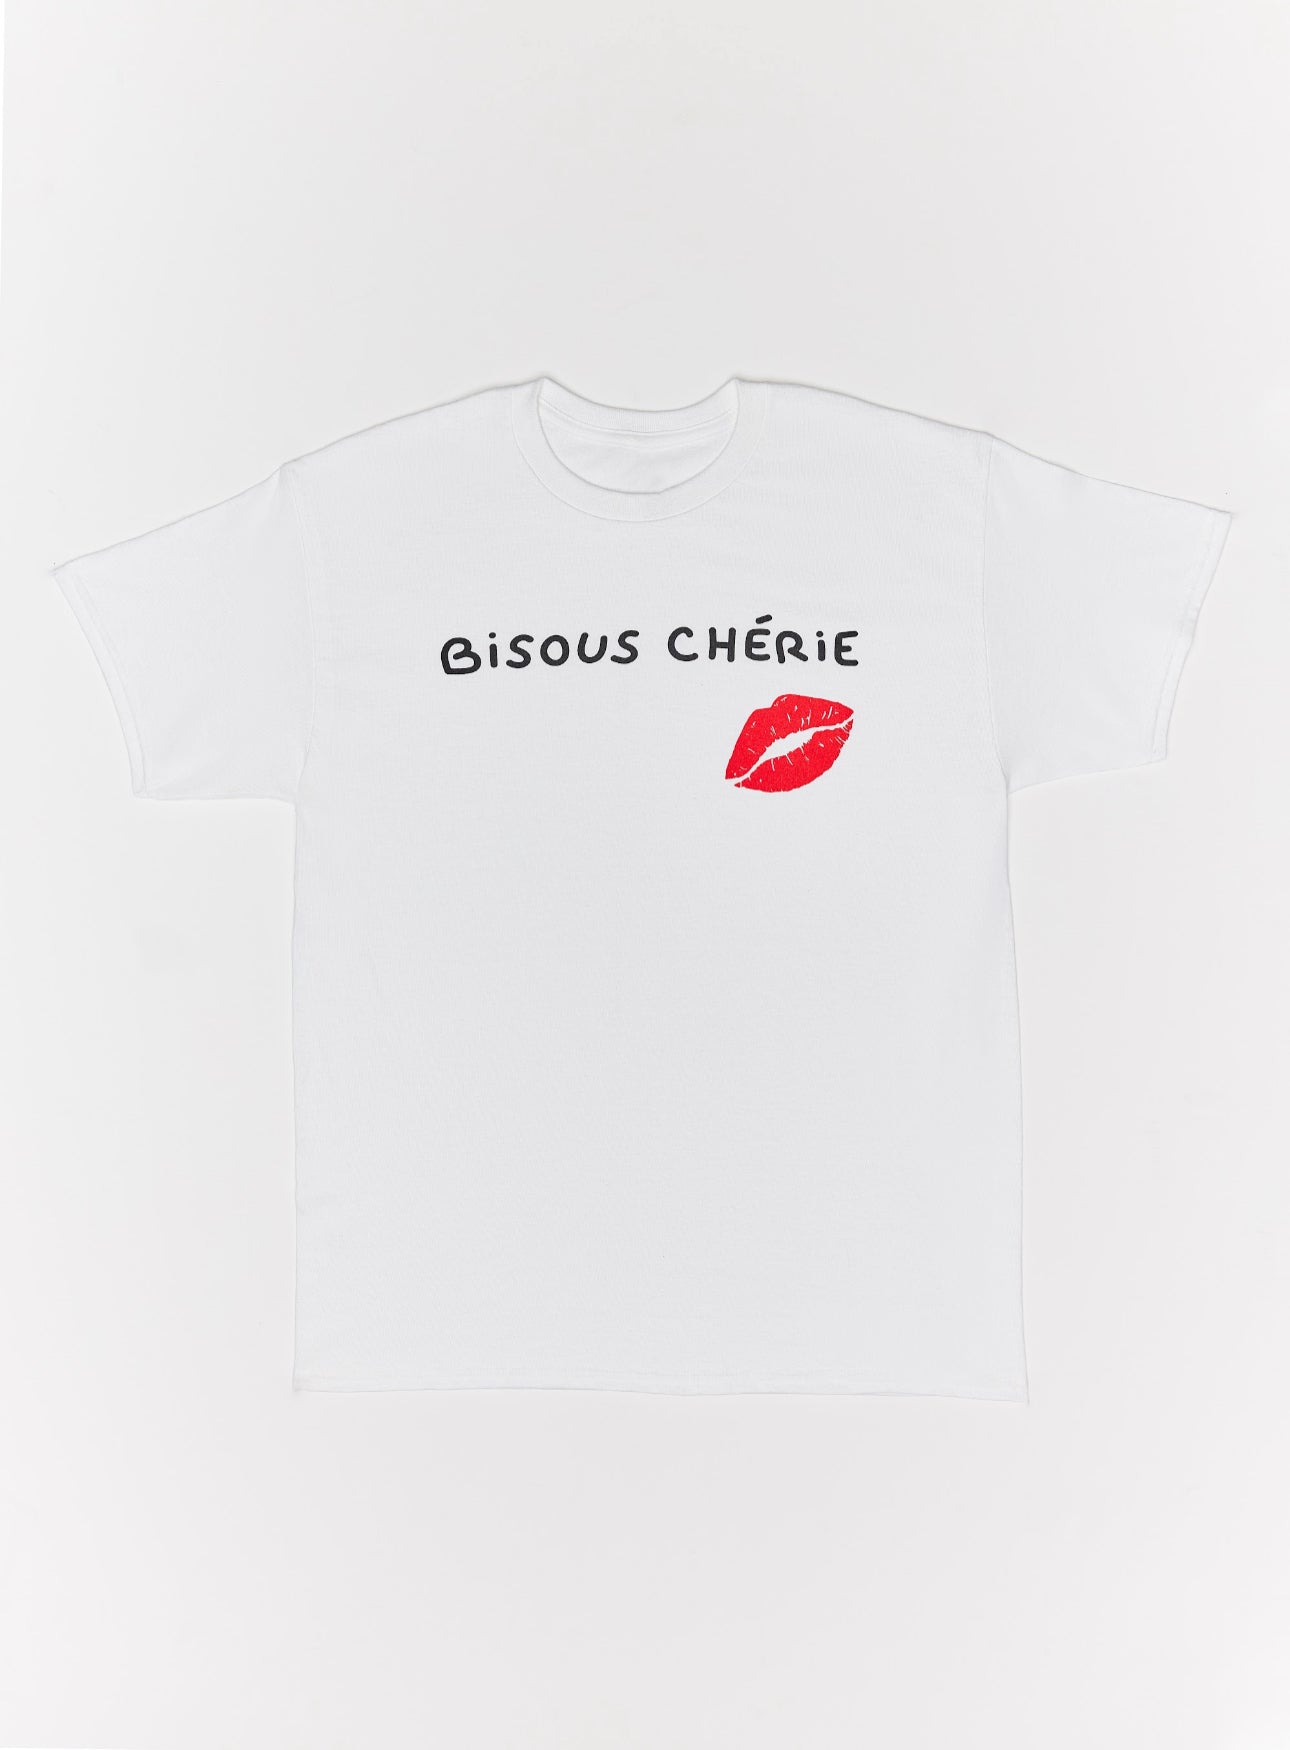 Chapitre 2- Bisous Cherie- T-Shirt